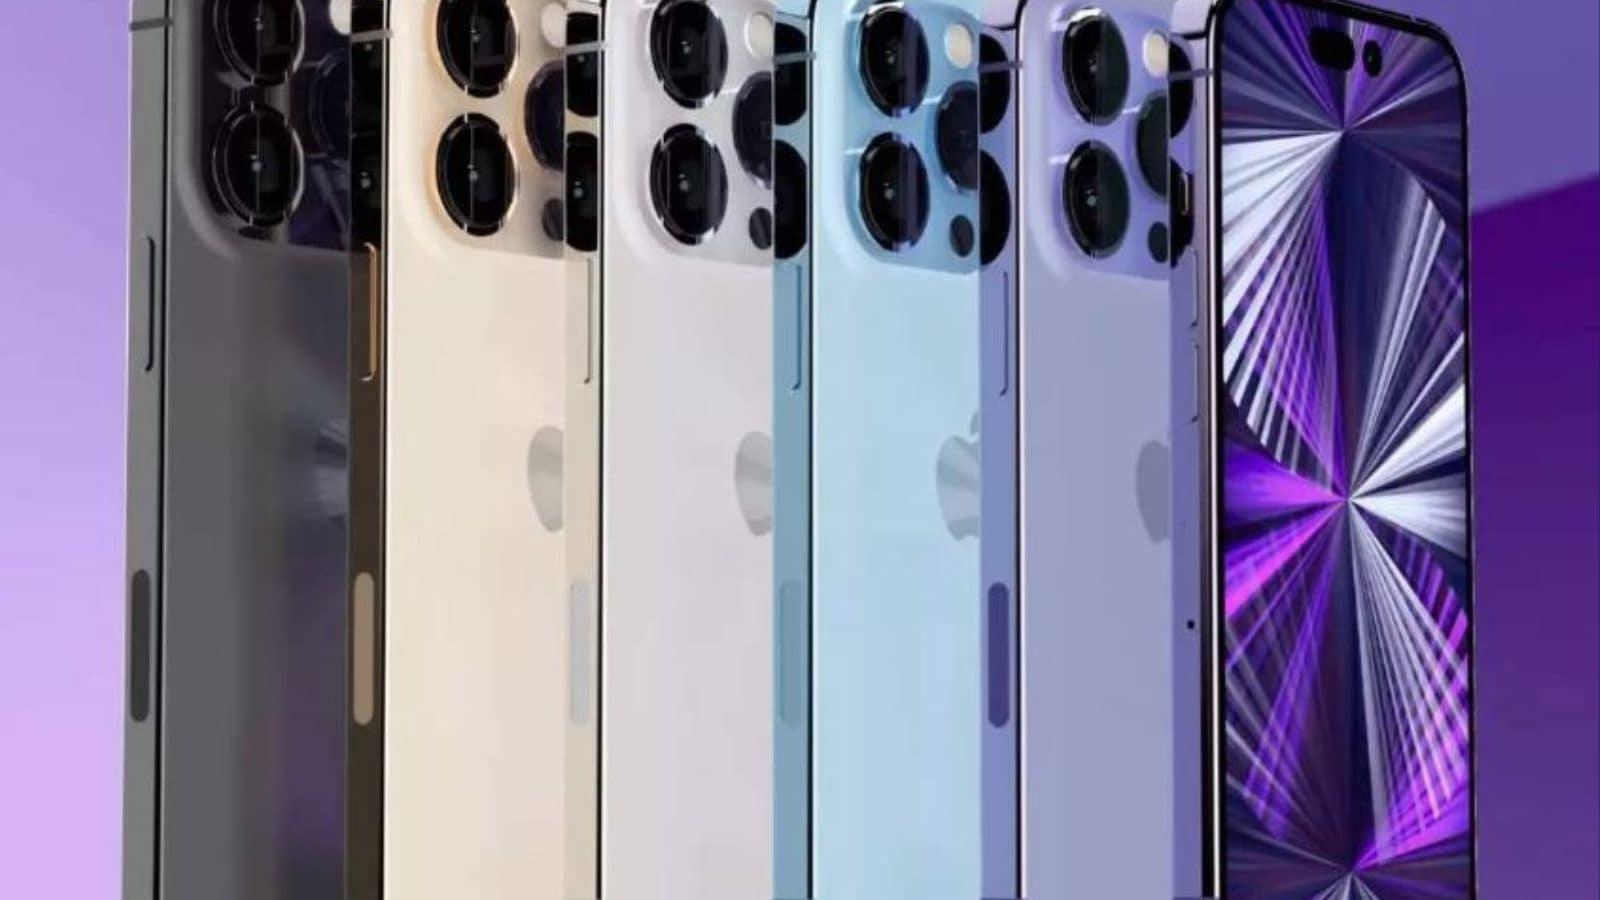 Iphone 15 pro models. Iphone 14 Pro Max. Iphone 14 Pro Max 2022. Iphone 14 Pro Max цвета. Apple 14 Pro Max расцветки.